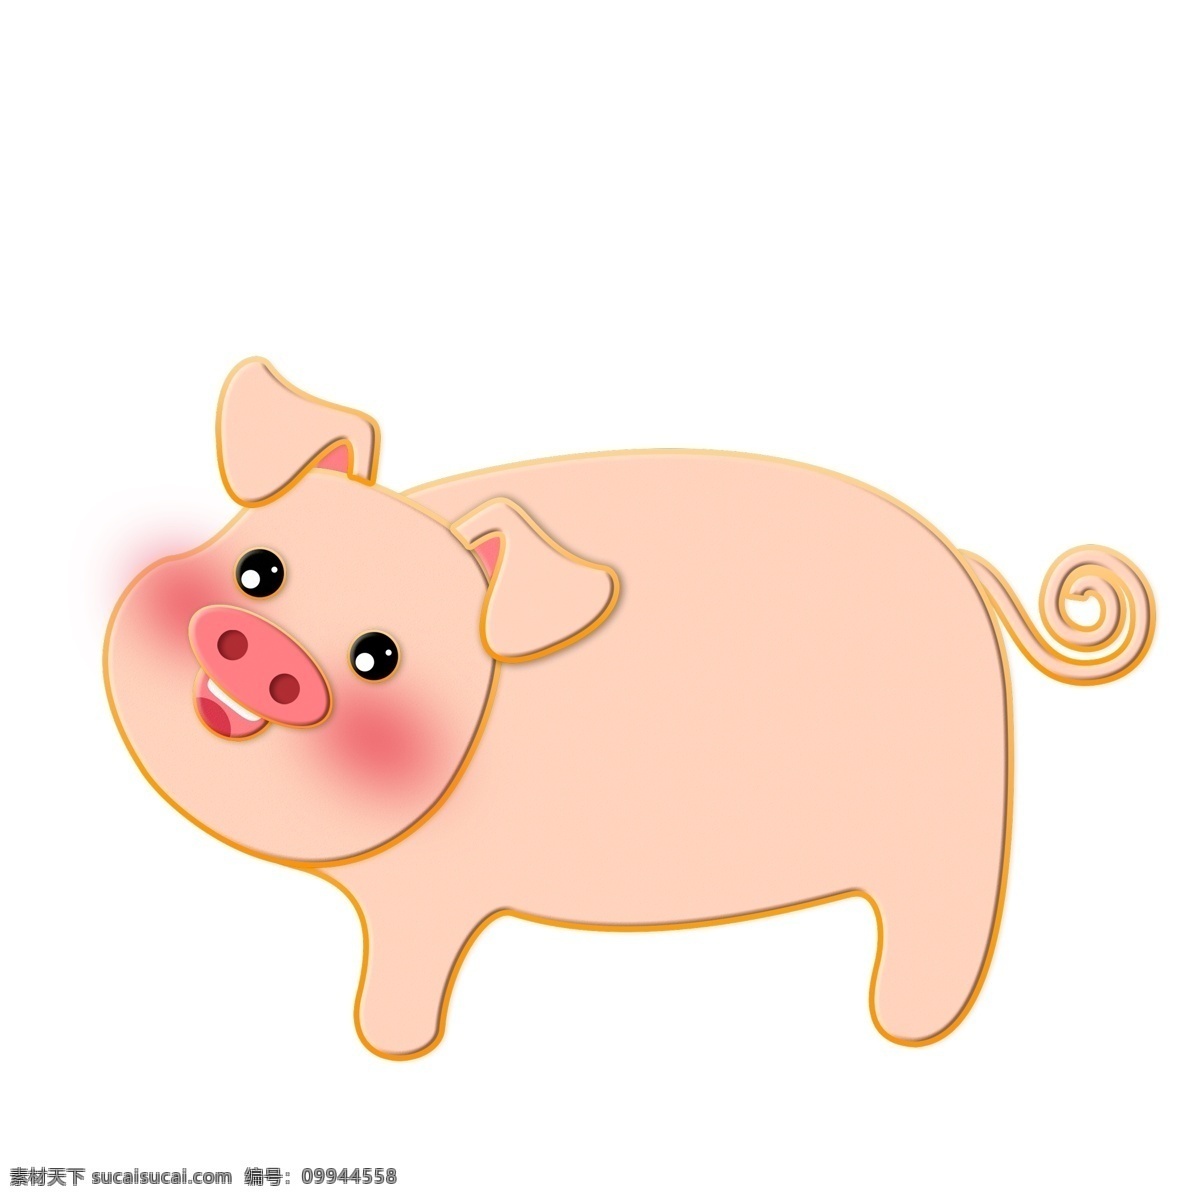 粉色 2019 猪年 小 猪 元素 小猪 设计元素 装饰图案 简约 创意元素 小猪图案 新年 手绘 元素设计 psd元素 免扣元素